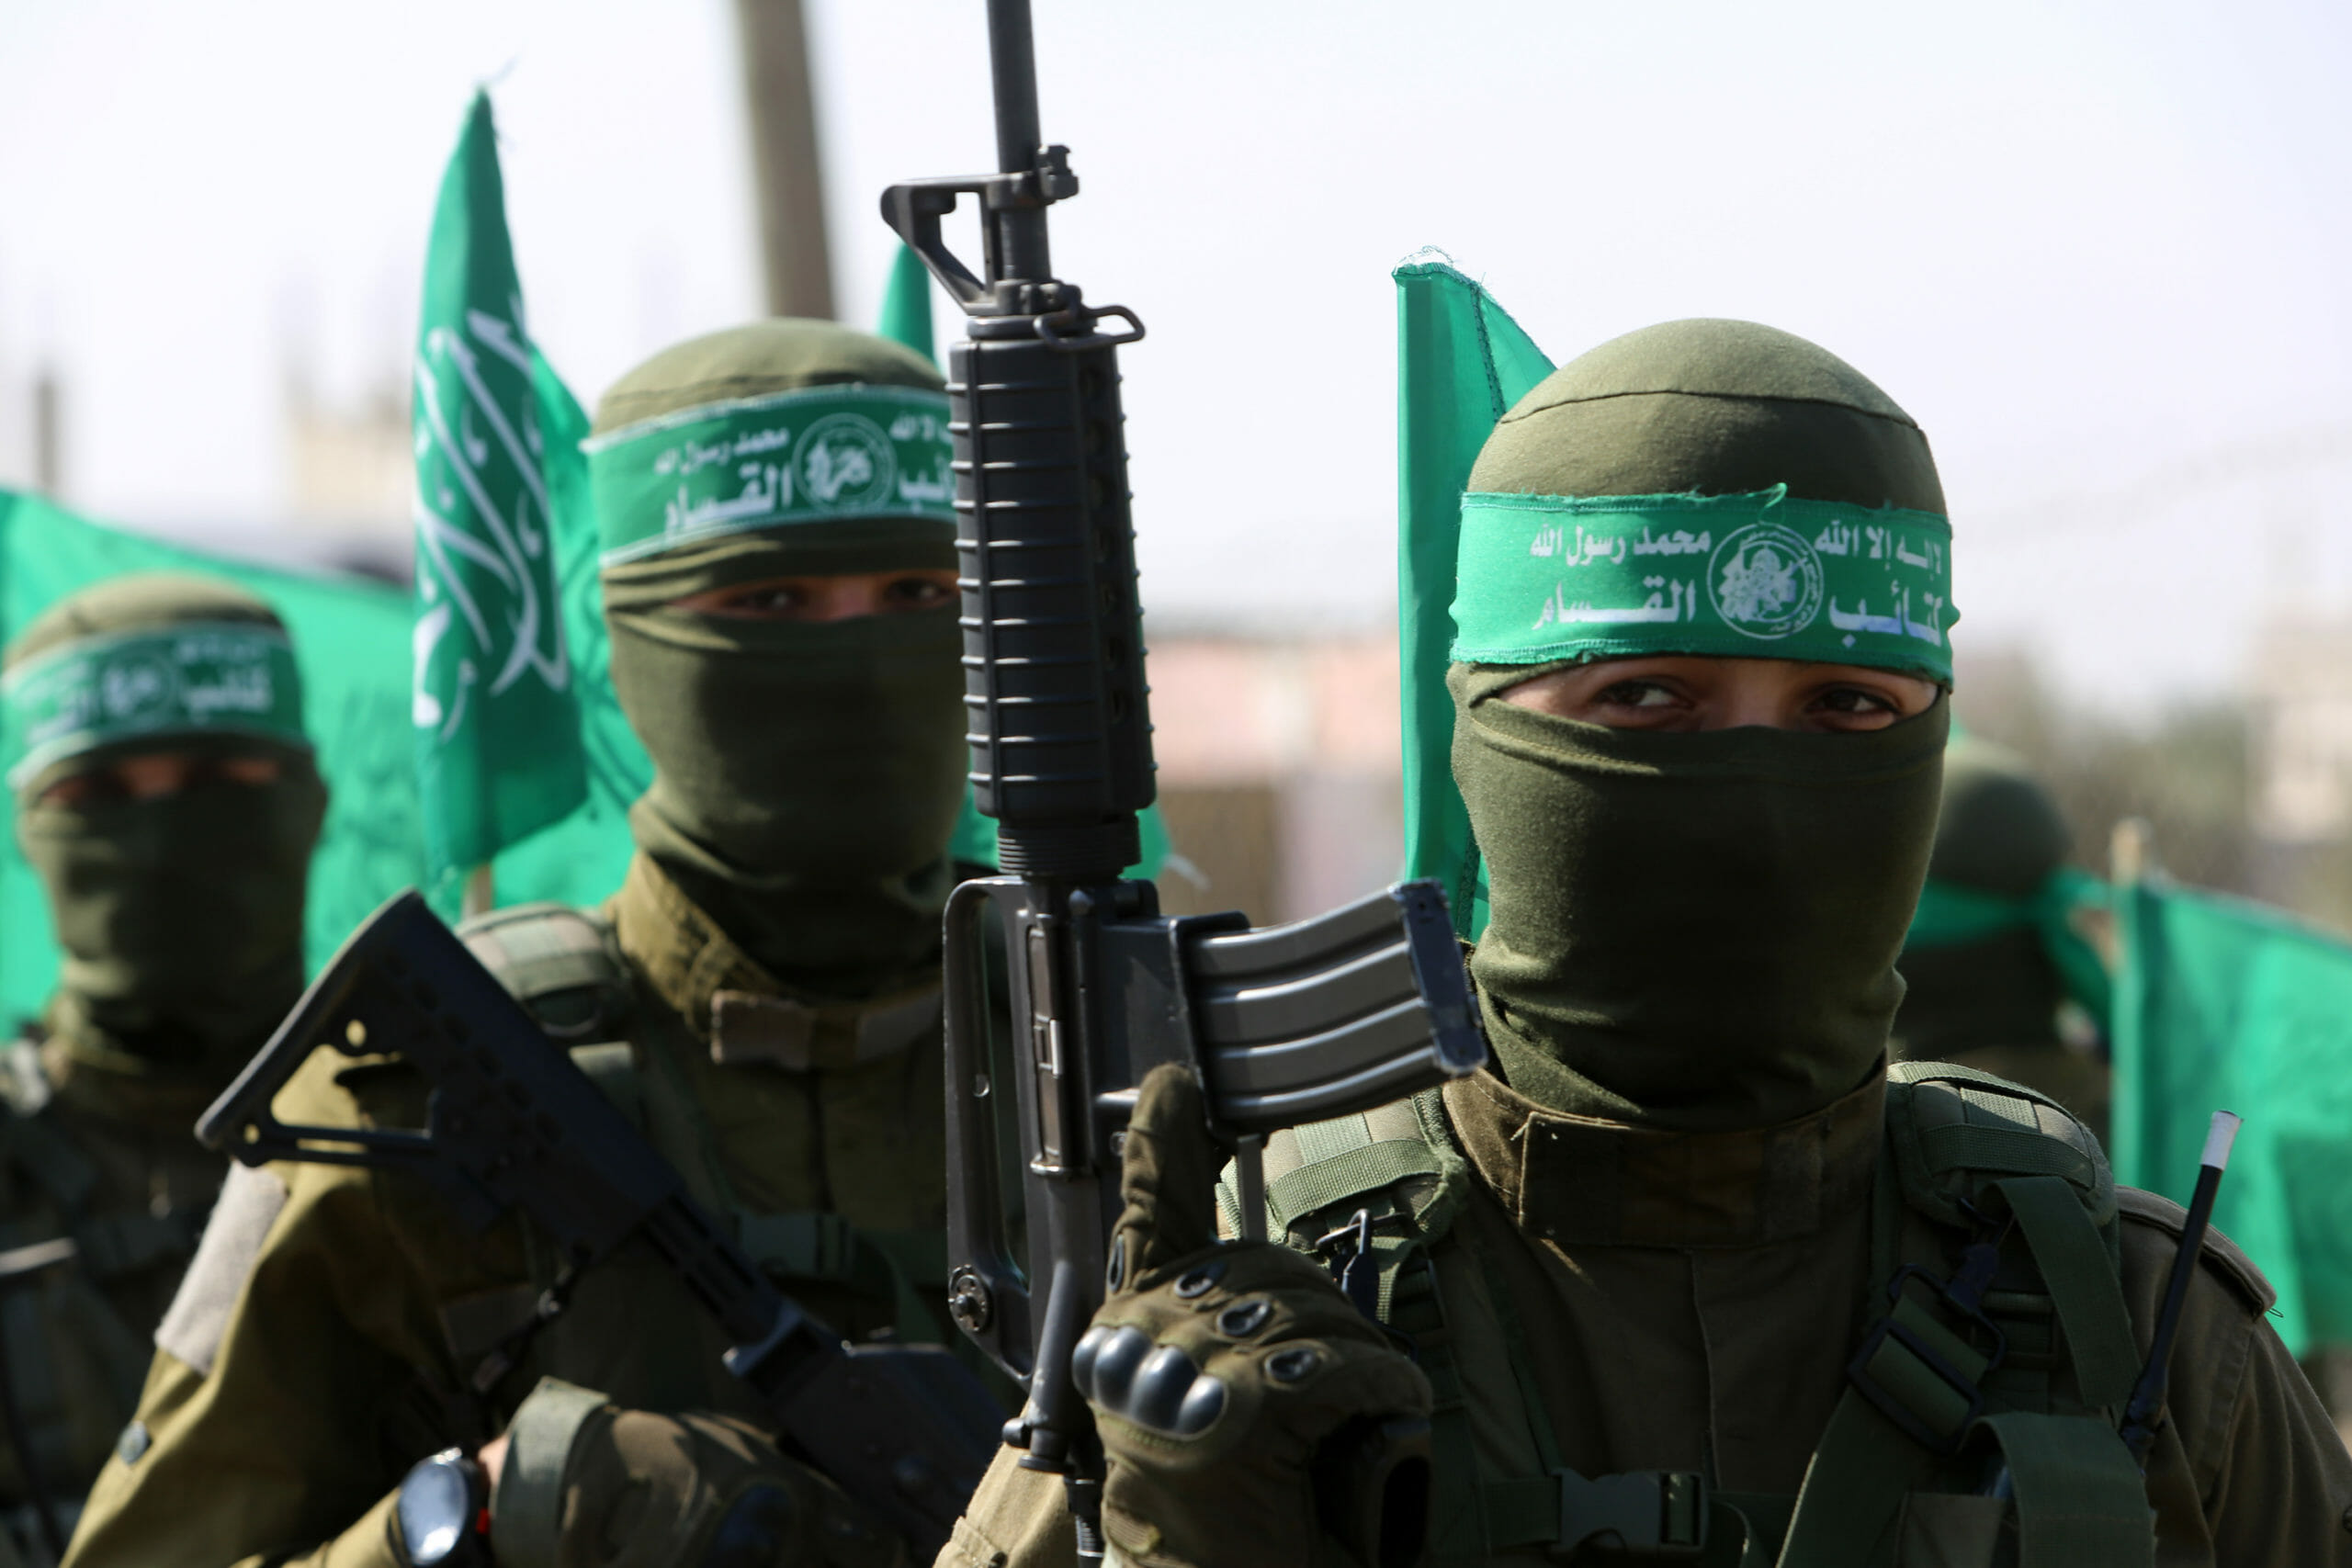 Read more about the article FAKTA: Hamas har ledet Gaza i mere end ti år